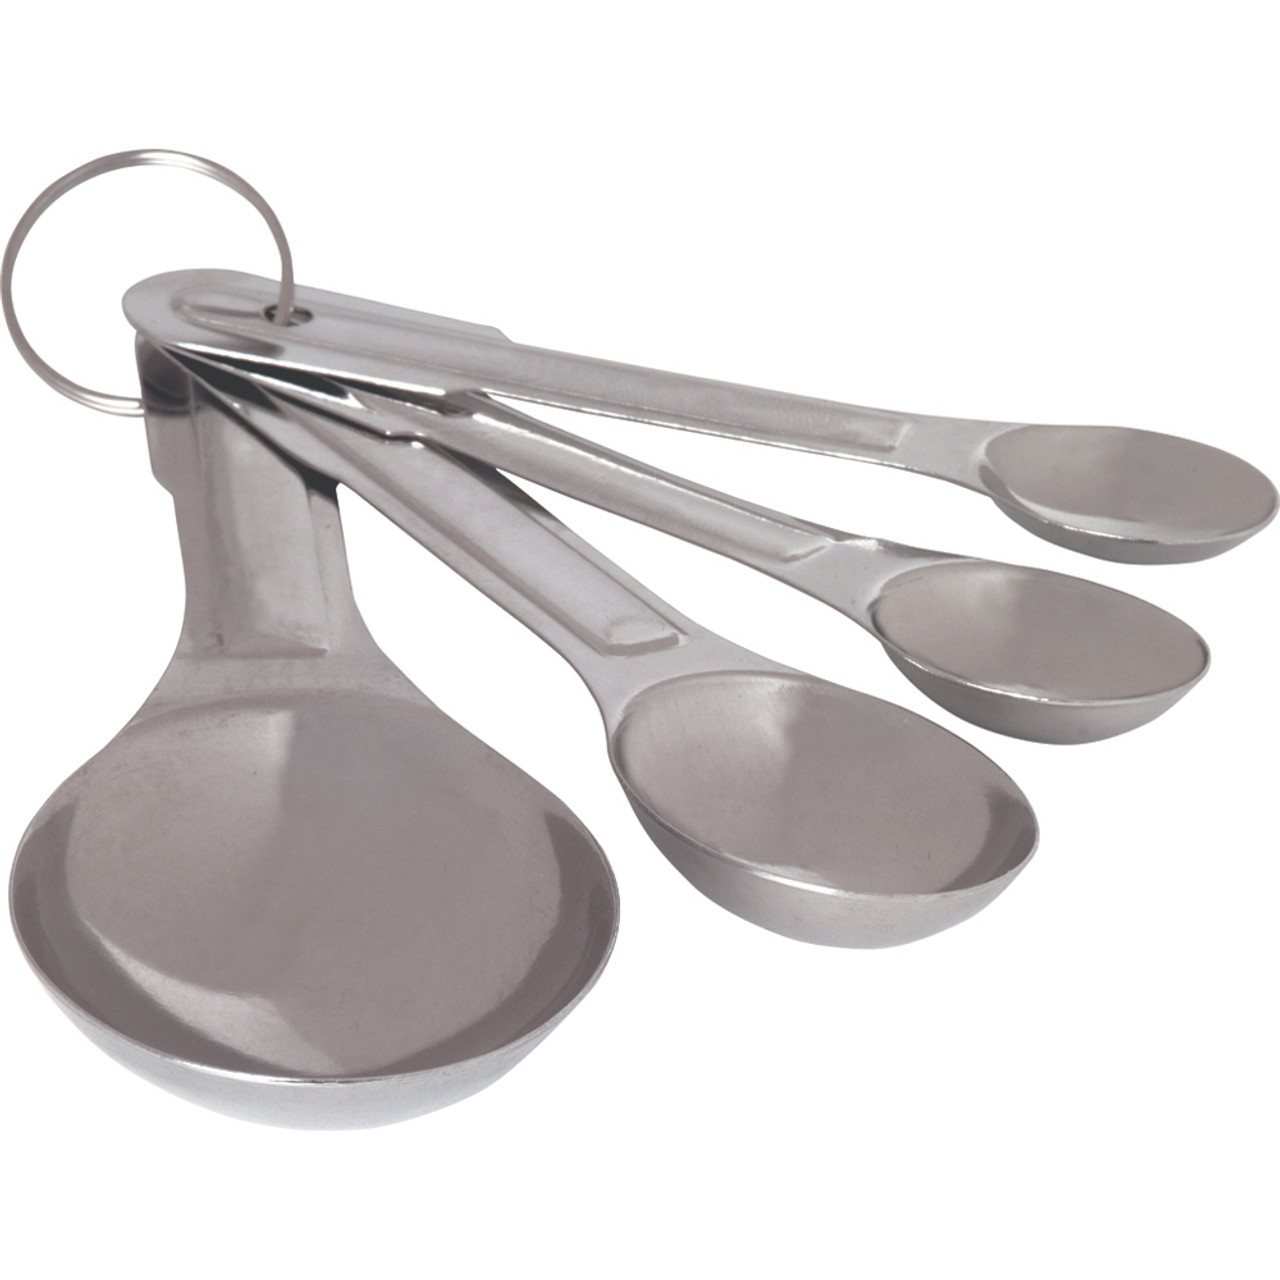 image: metal measuring spoons